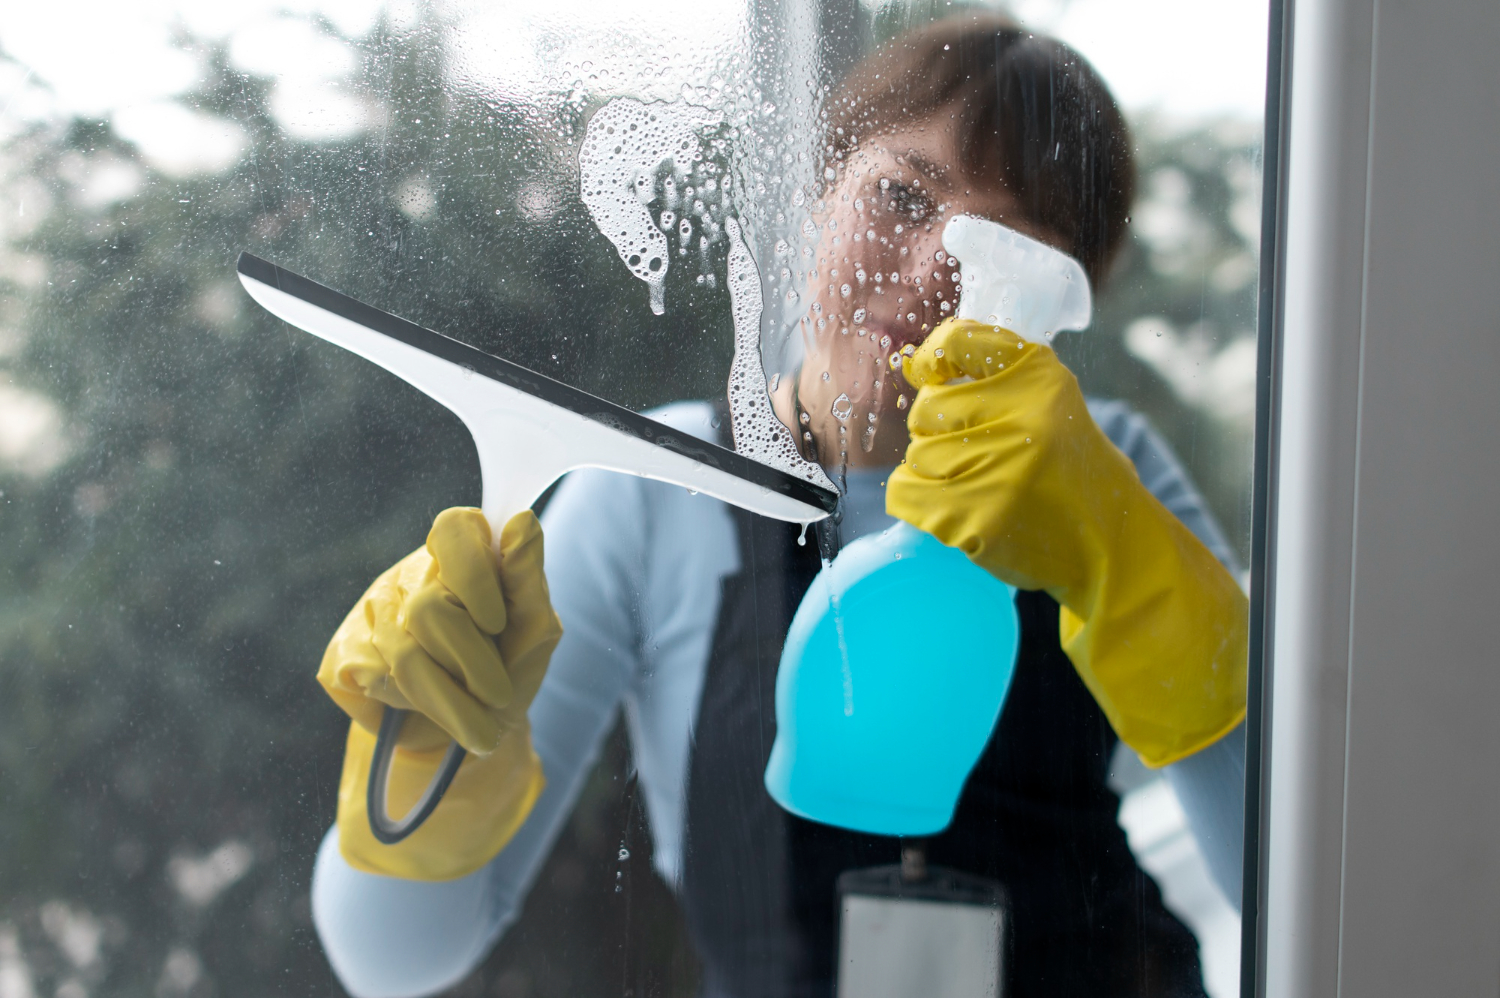 Limpador caseiro: faça isso e deixe suas janelas impecavelmente limpas